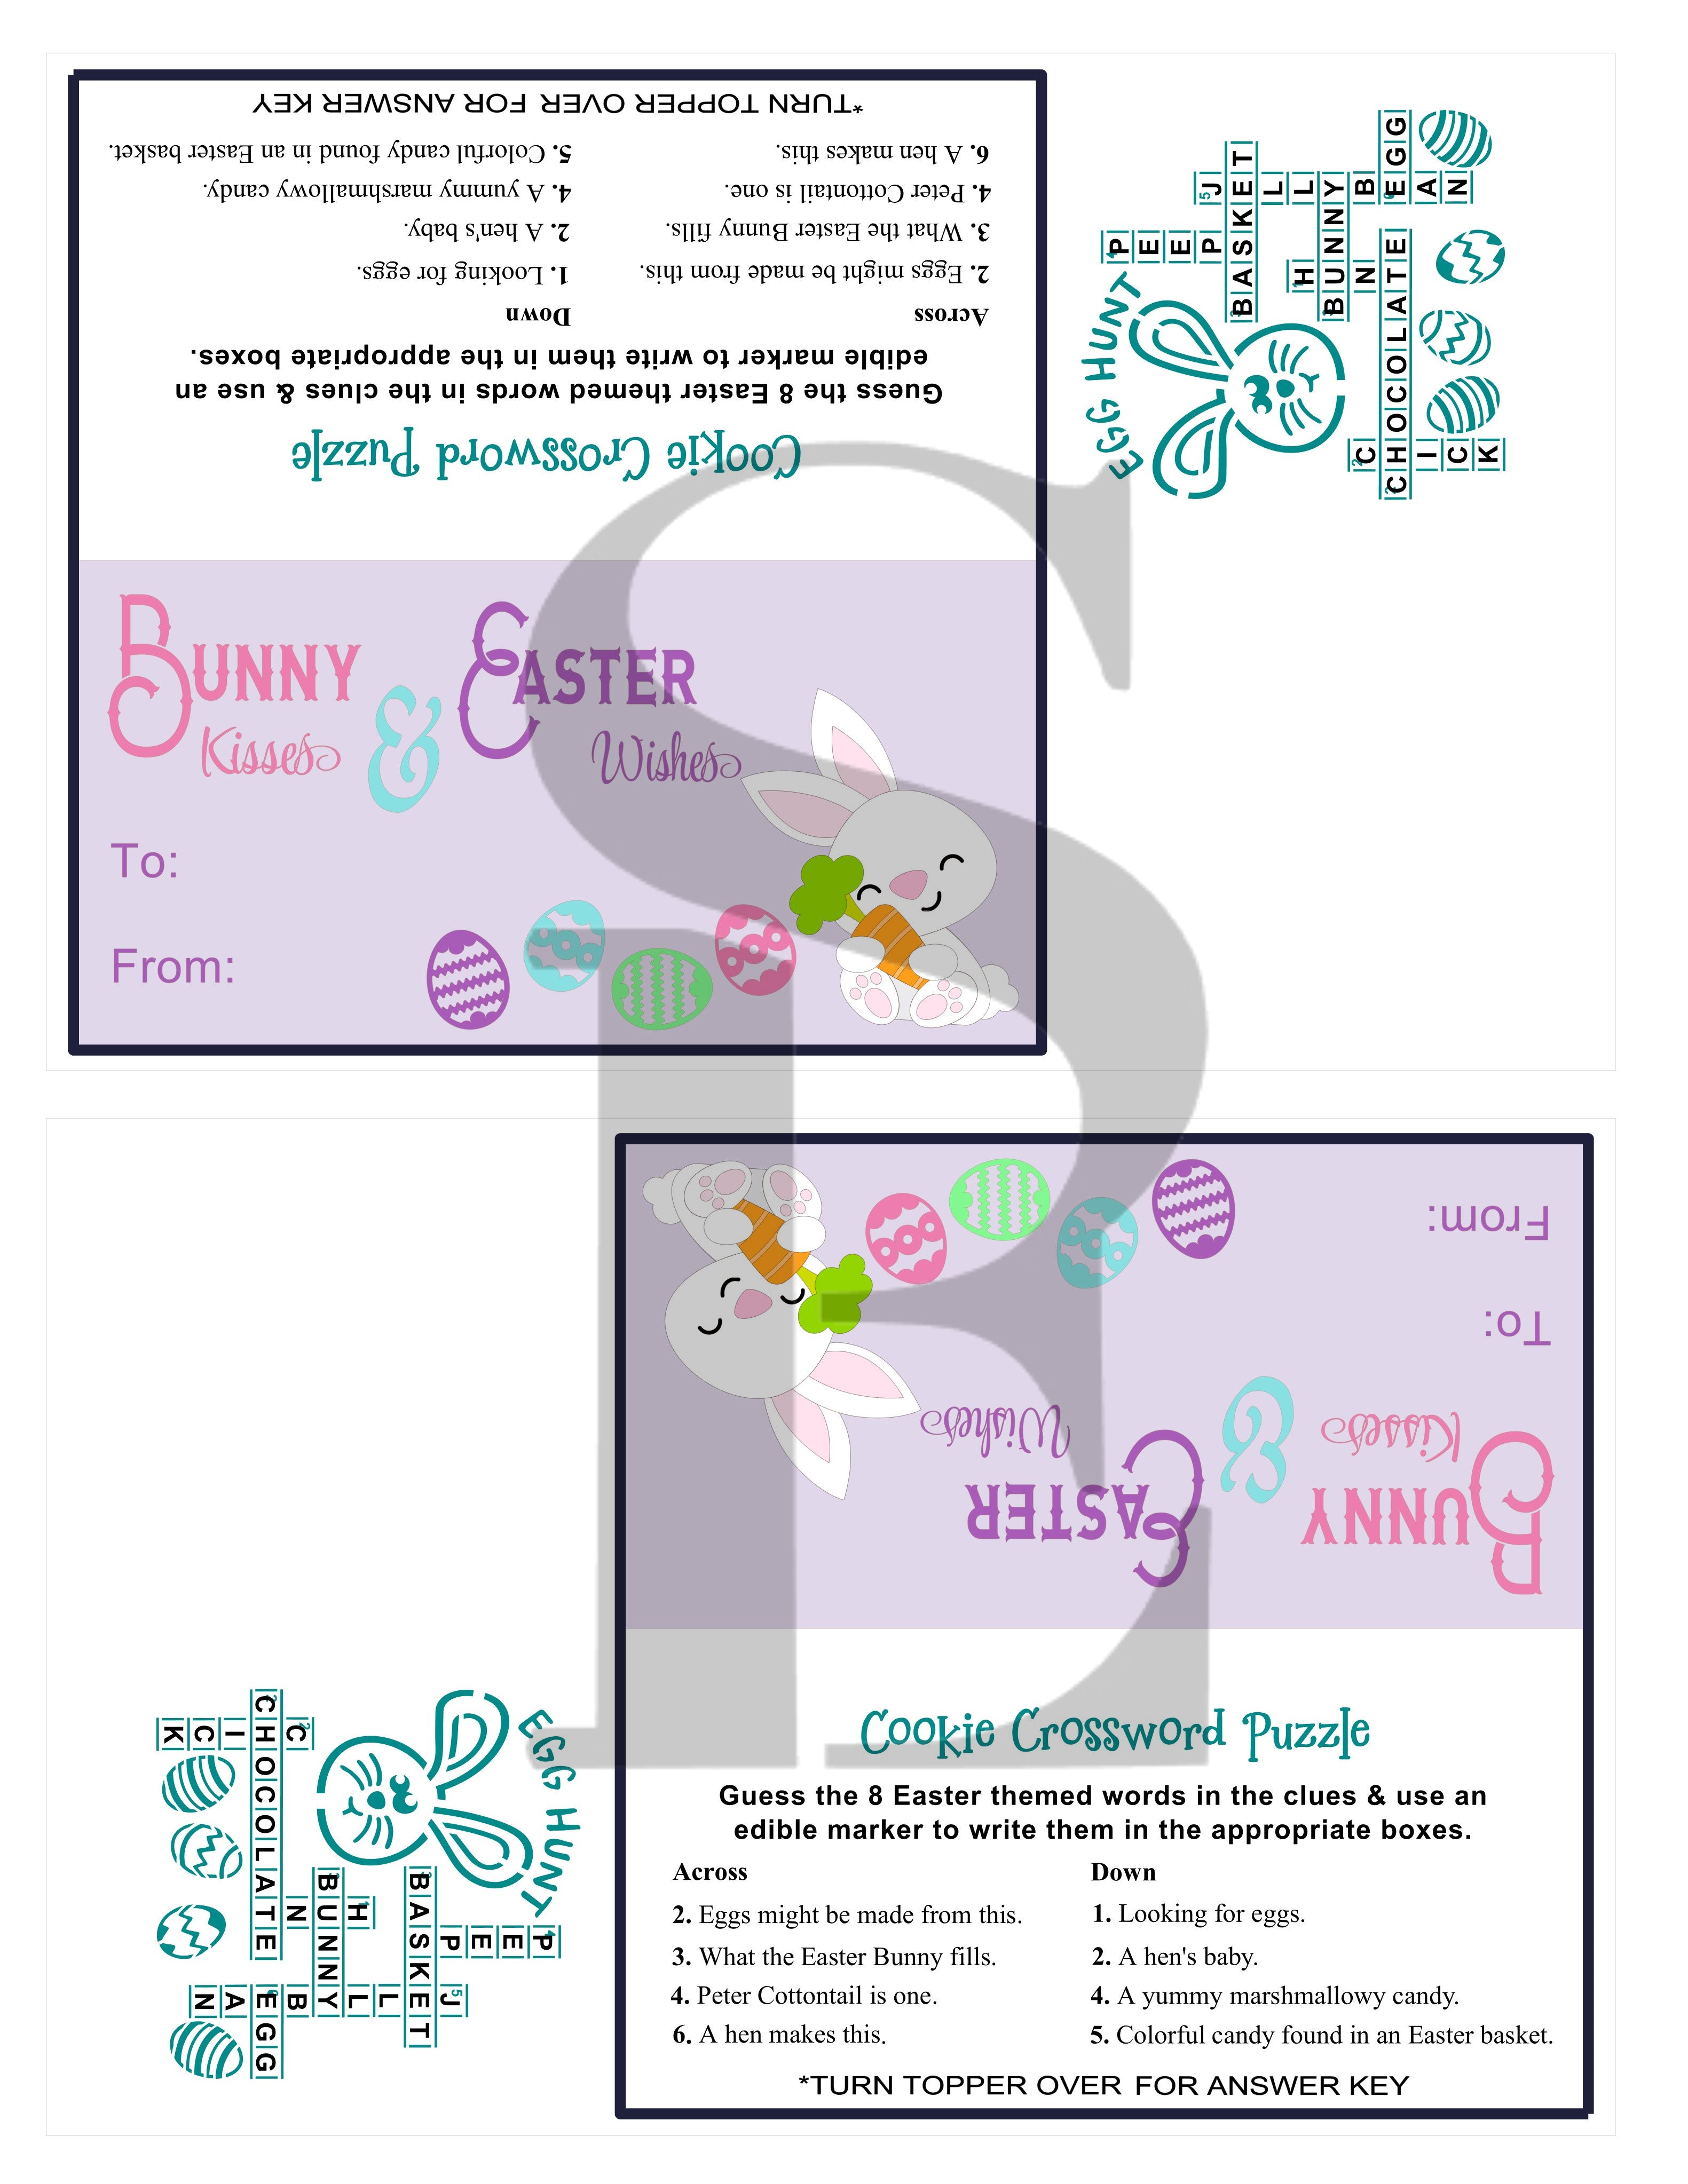 Easter Bunny Crossword Puzzle PYO Digital Design